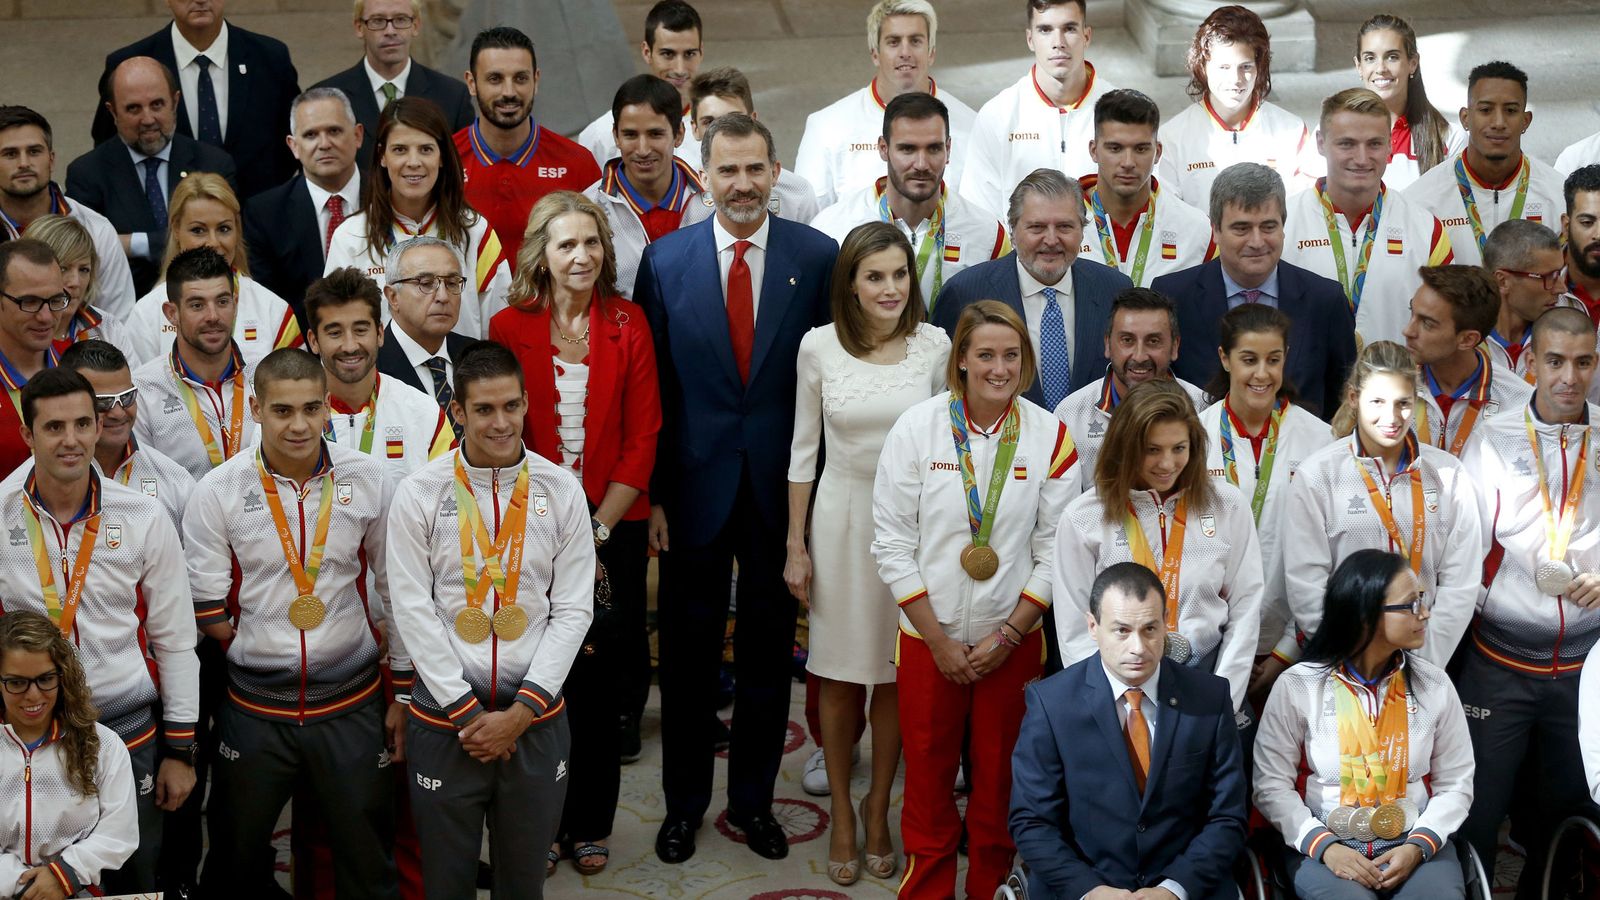 Foto: Foto de familia de los Reyes con algunos de los deportistas españoles ganadores de medallas y diplomas en los Juegos de Río (EFE)